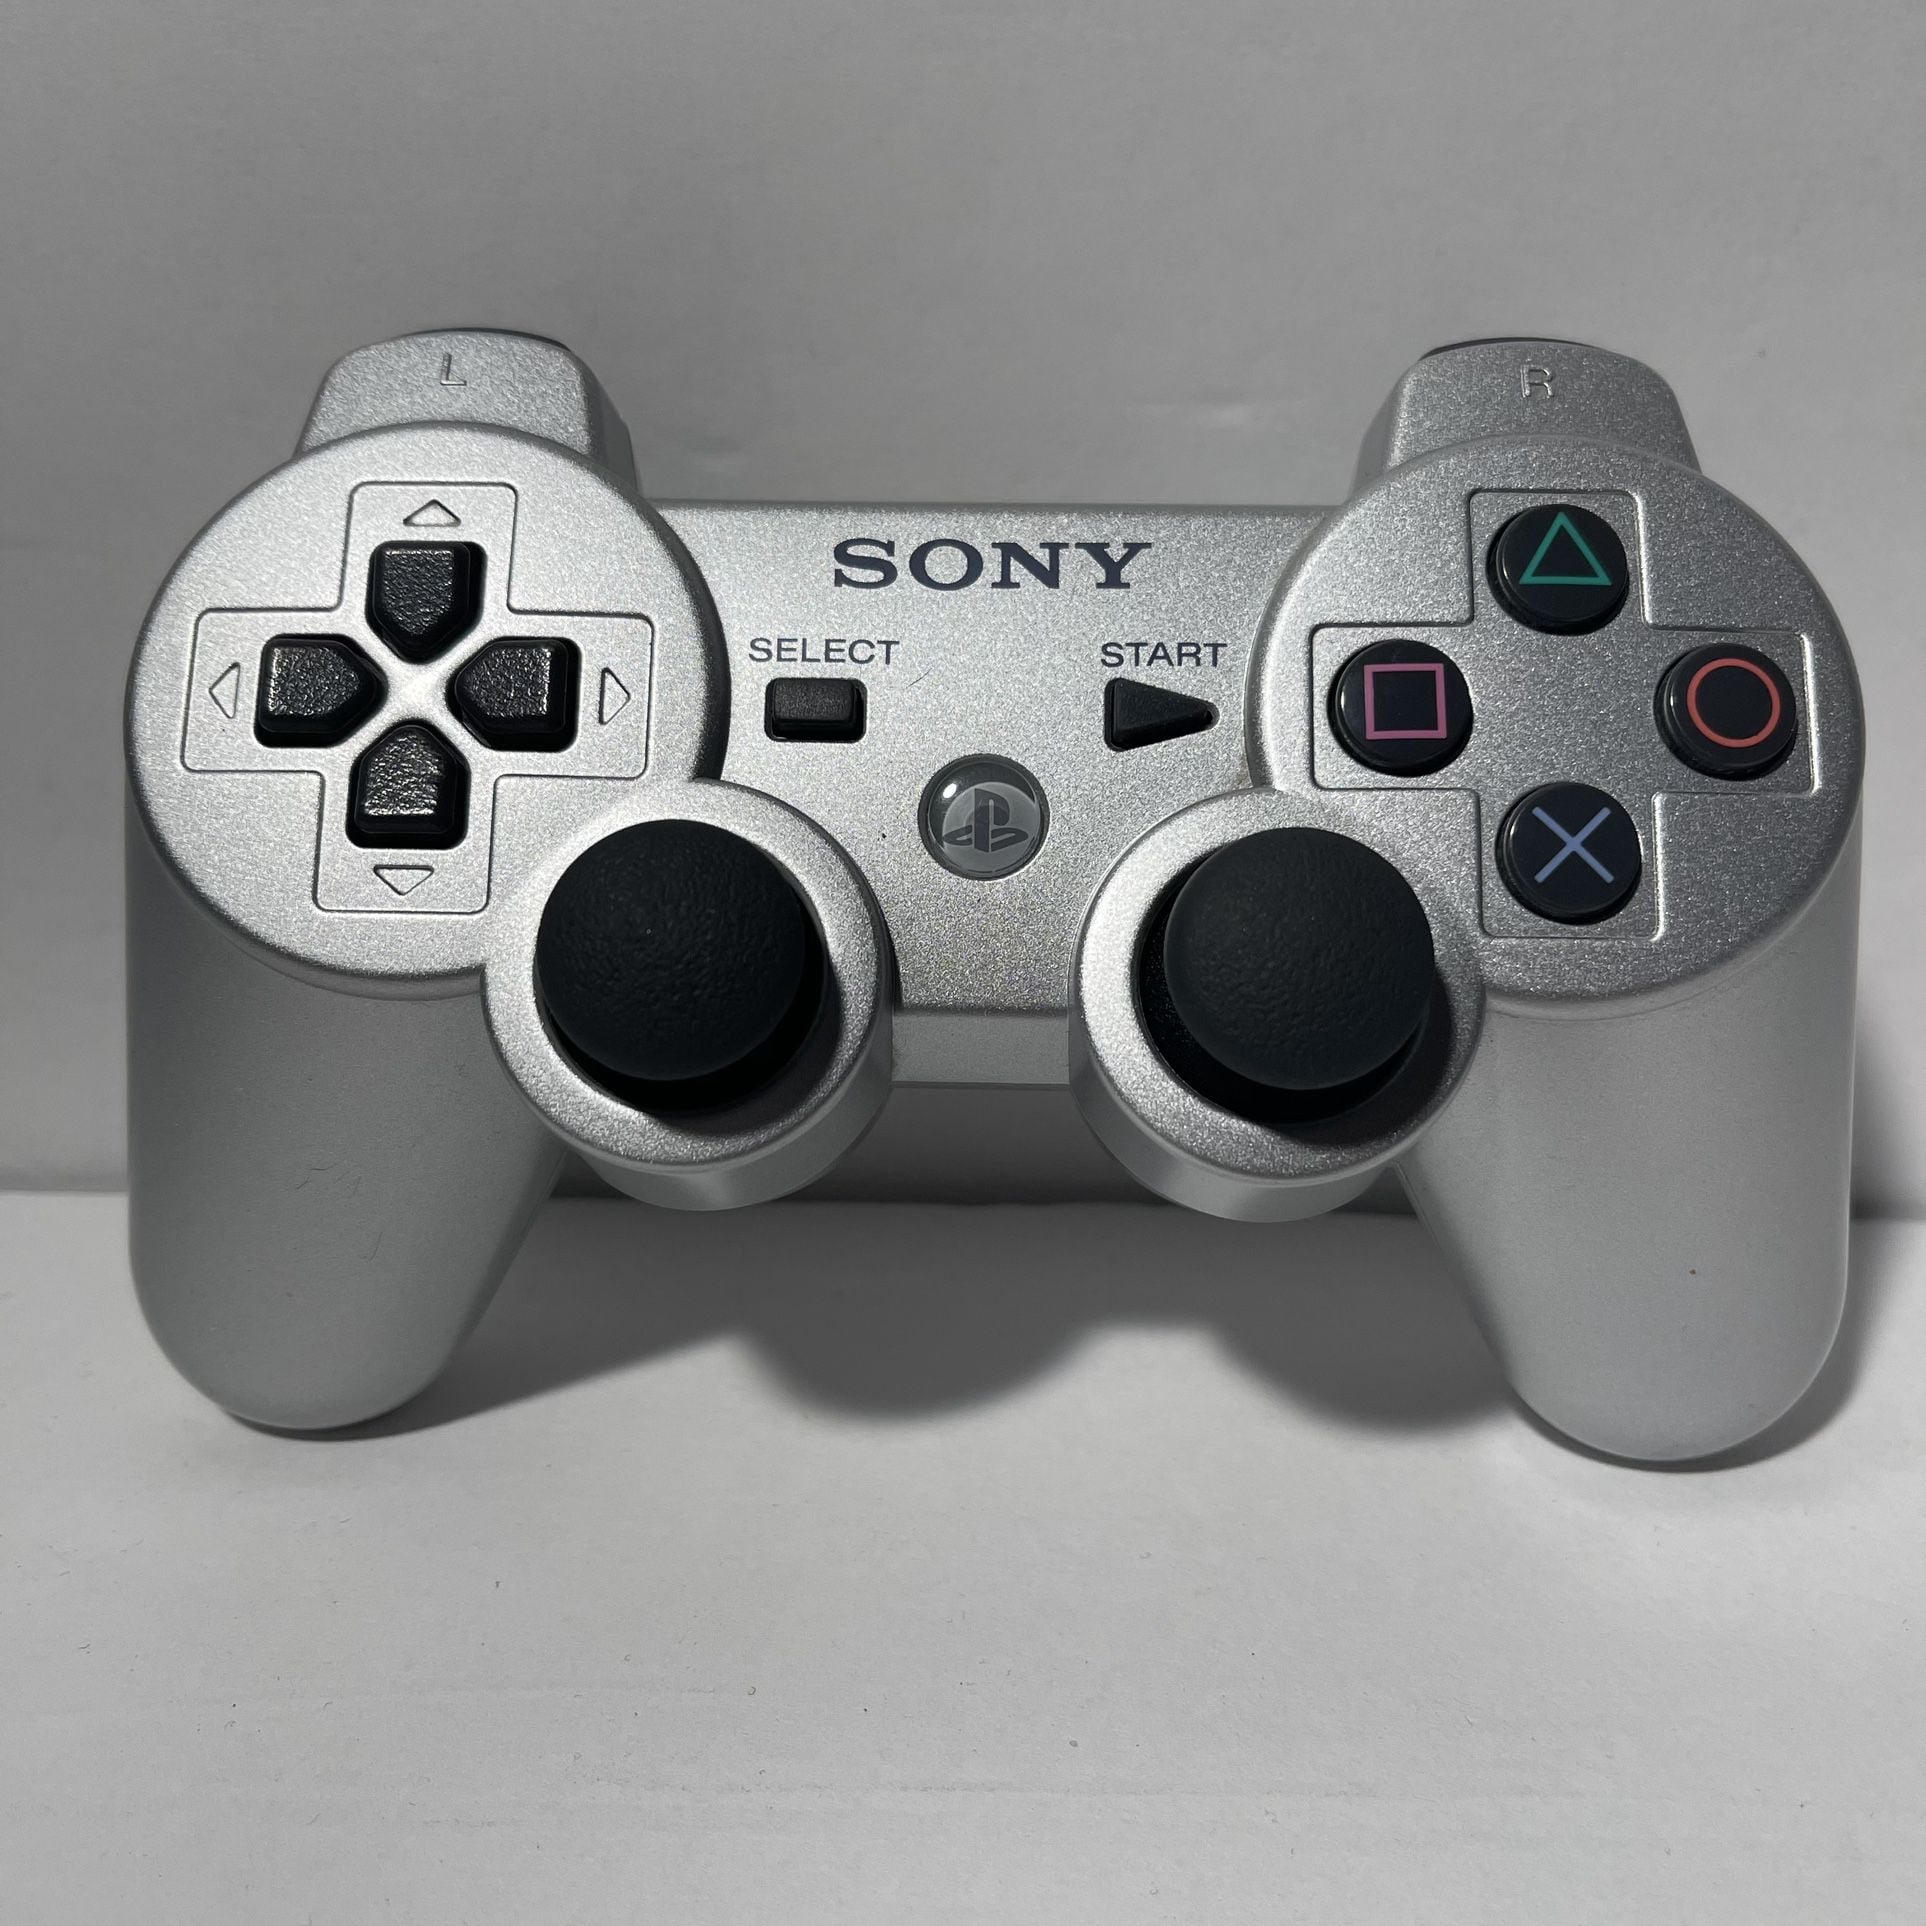  PlayStation 3 Controllers - PlayStation 3 Controllers